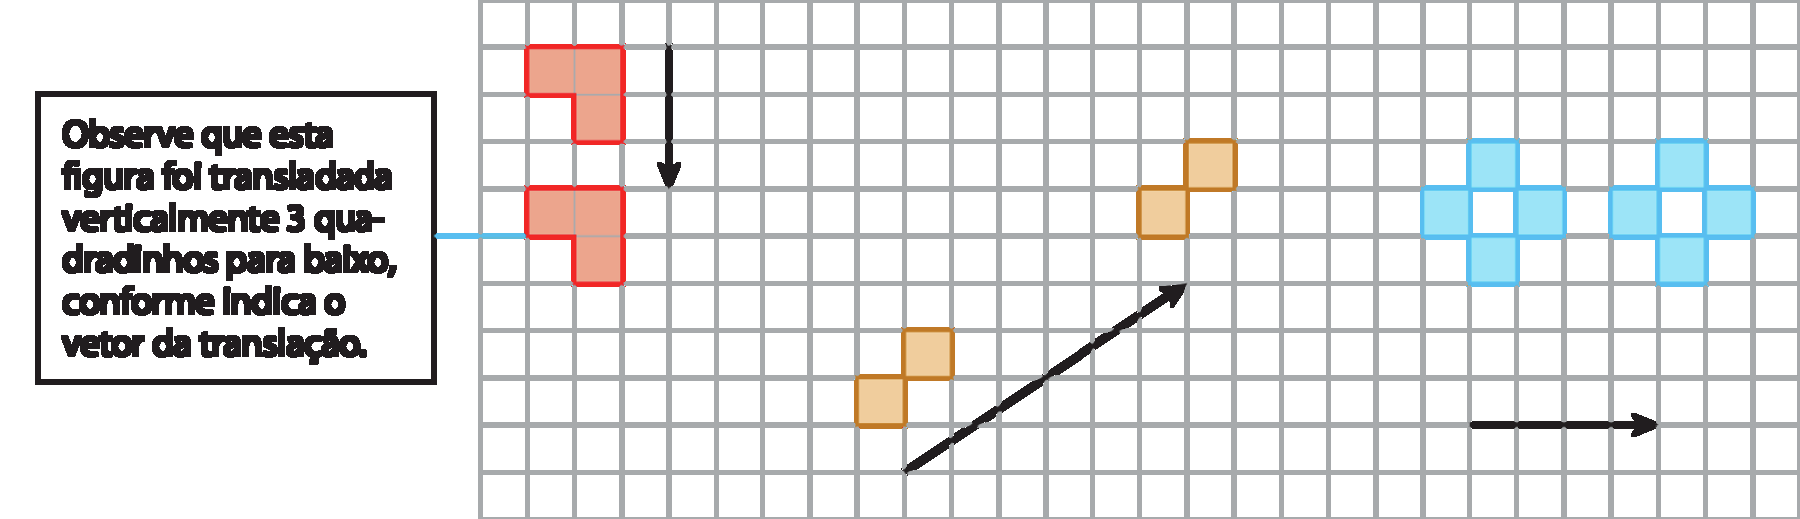 Ilustração. Malha quadriculada com exemplos de translação de figuras. No canto superior esquerdo, estão representadas duas figuras idênticas, uma embaixo da outra. Estas figura são compostas por 2 quadradinhos na horizontal e um quadradinho abaixo do segundo. À direita destas duas figuras está representado o vetor de translação que é vertical, aponta para baixo e tem medida de comprimento igual a de 3 lados de quadradinhos da malha. 
No centro da malha estão representadas das figuras idênticas em diagonal. Estas figura são compostas por 2 quadradinhos da malha em diagonal.  Alinhado com estas duas figuras está representado o vetor de translação que está sobre a diagonal de um retângulo composto por 4 fileiras com 6 quadradinhos cada. 
No canto superior direito, estão representadas duas figuras idênticas, lado a lado. Estas figura são compostas por 4 quadradinhos que forma uma figura que se parece com um cruz. Embaixo destas duas figuras está representado o vetor de translação que é horizontal, aponta para a direita e tem medida de comprimento igual a de 4 lados de quadradinhos da malha. 
À esquerda da malha, há o texto: Observe que esta figura foi transladada
verticalmente 3 quadradinhos para baixo,
conforme indica o vetor da translação.